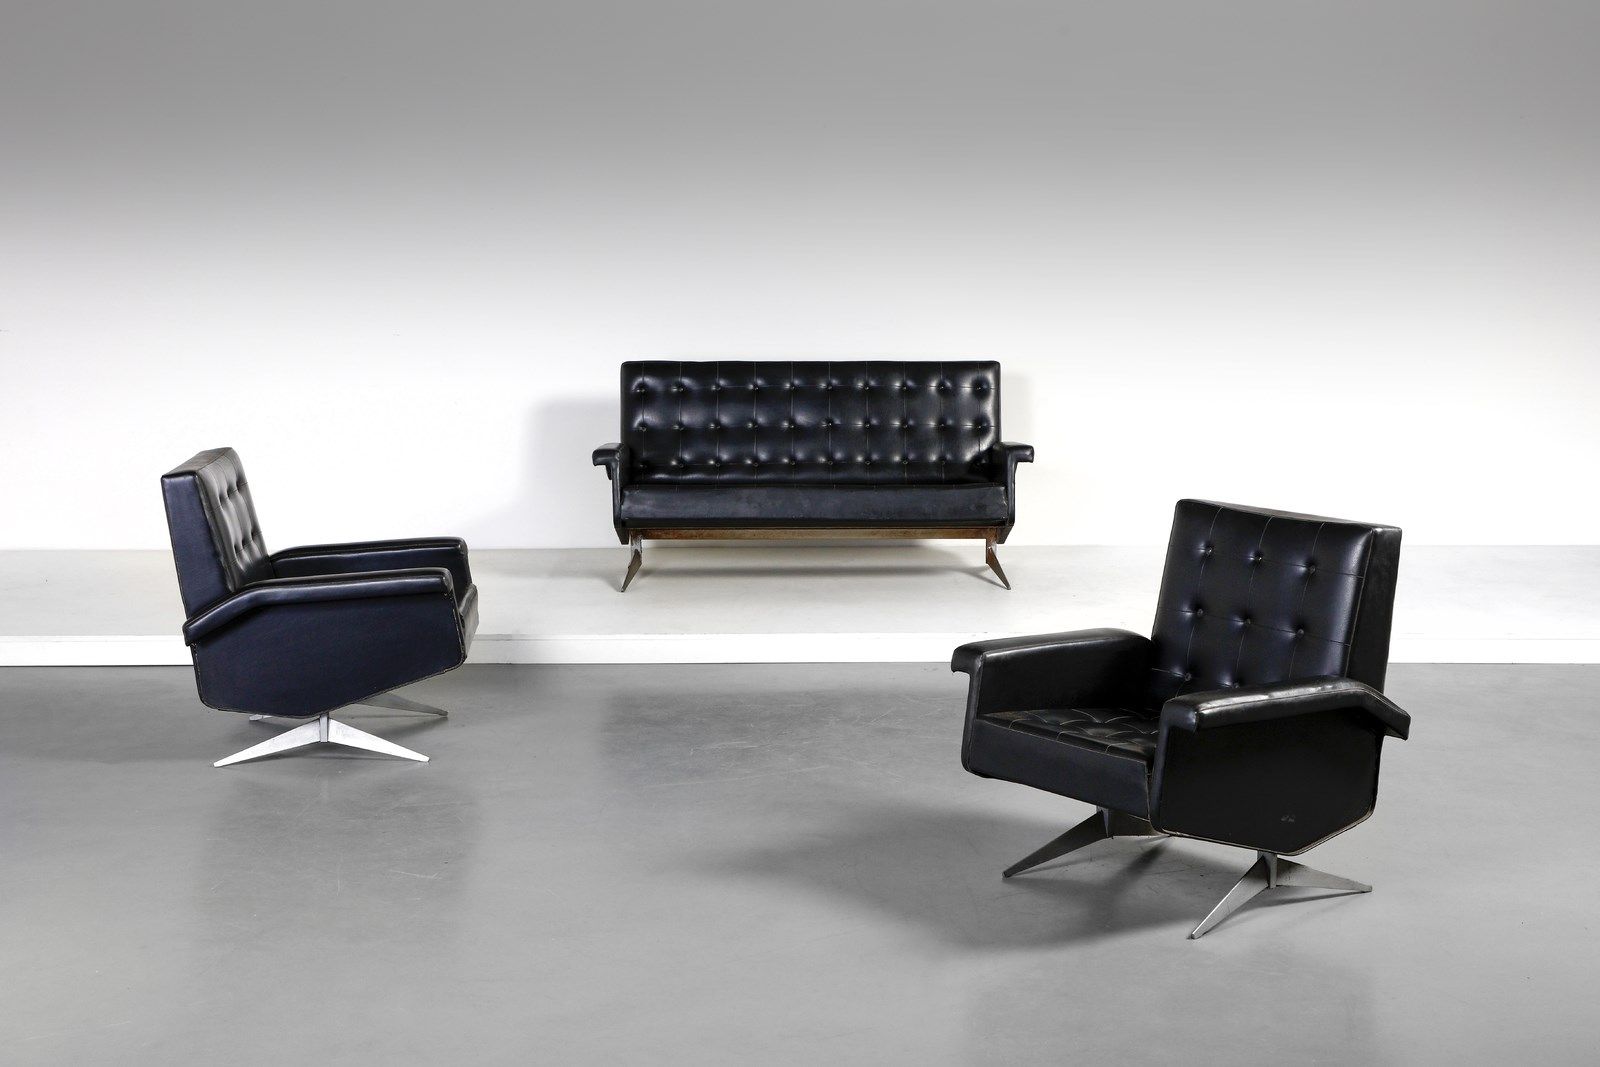 Manifattura Italiana MANIFATTURA ITALIANA 沙发和一对扶手椅。铁杆和仿制皮革。Cm 76.00 x 83.00 x 75&hellip;